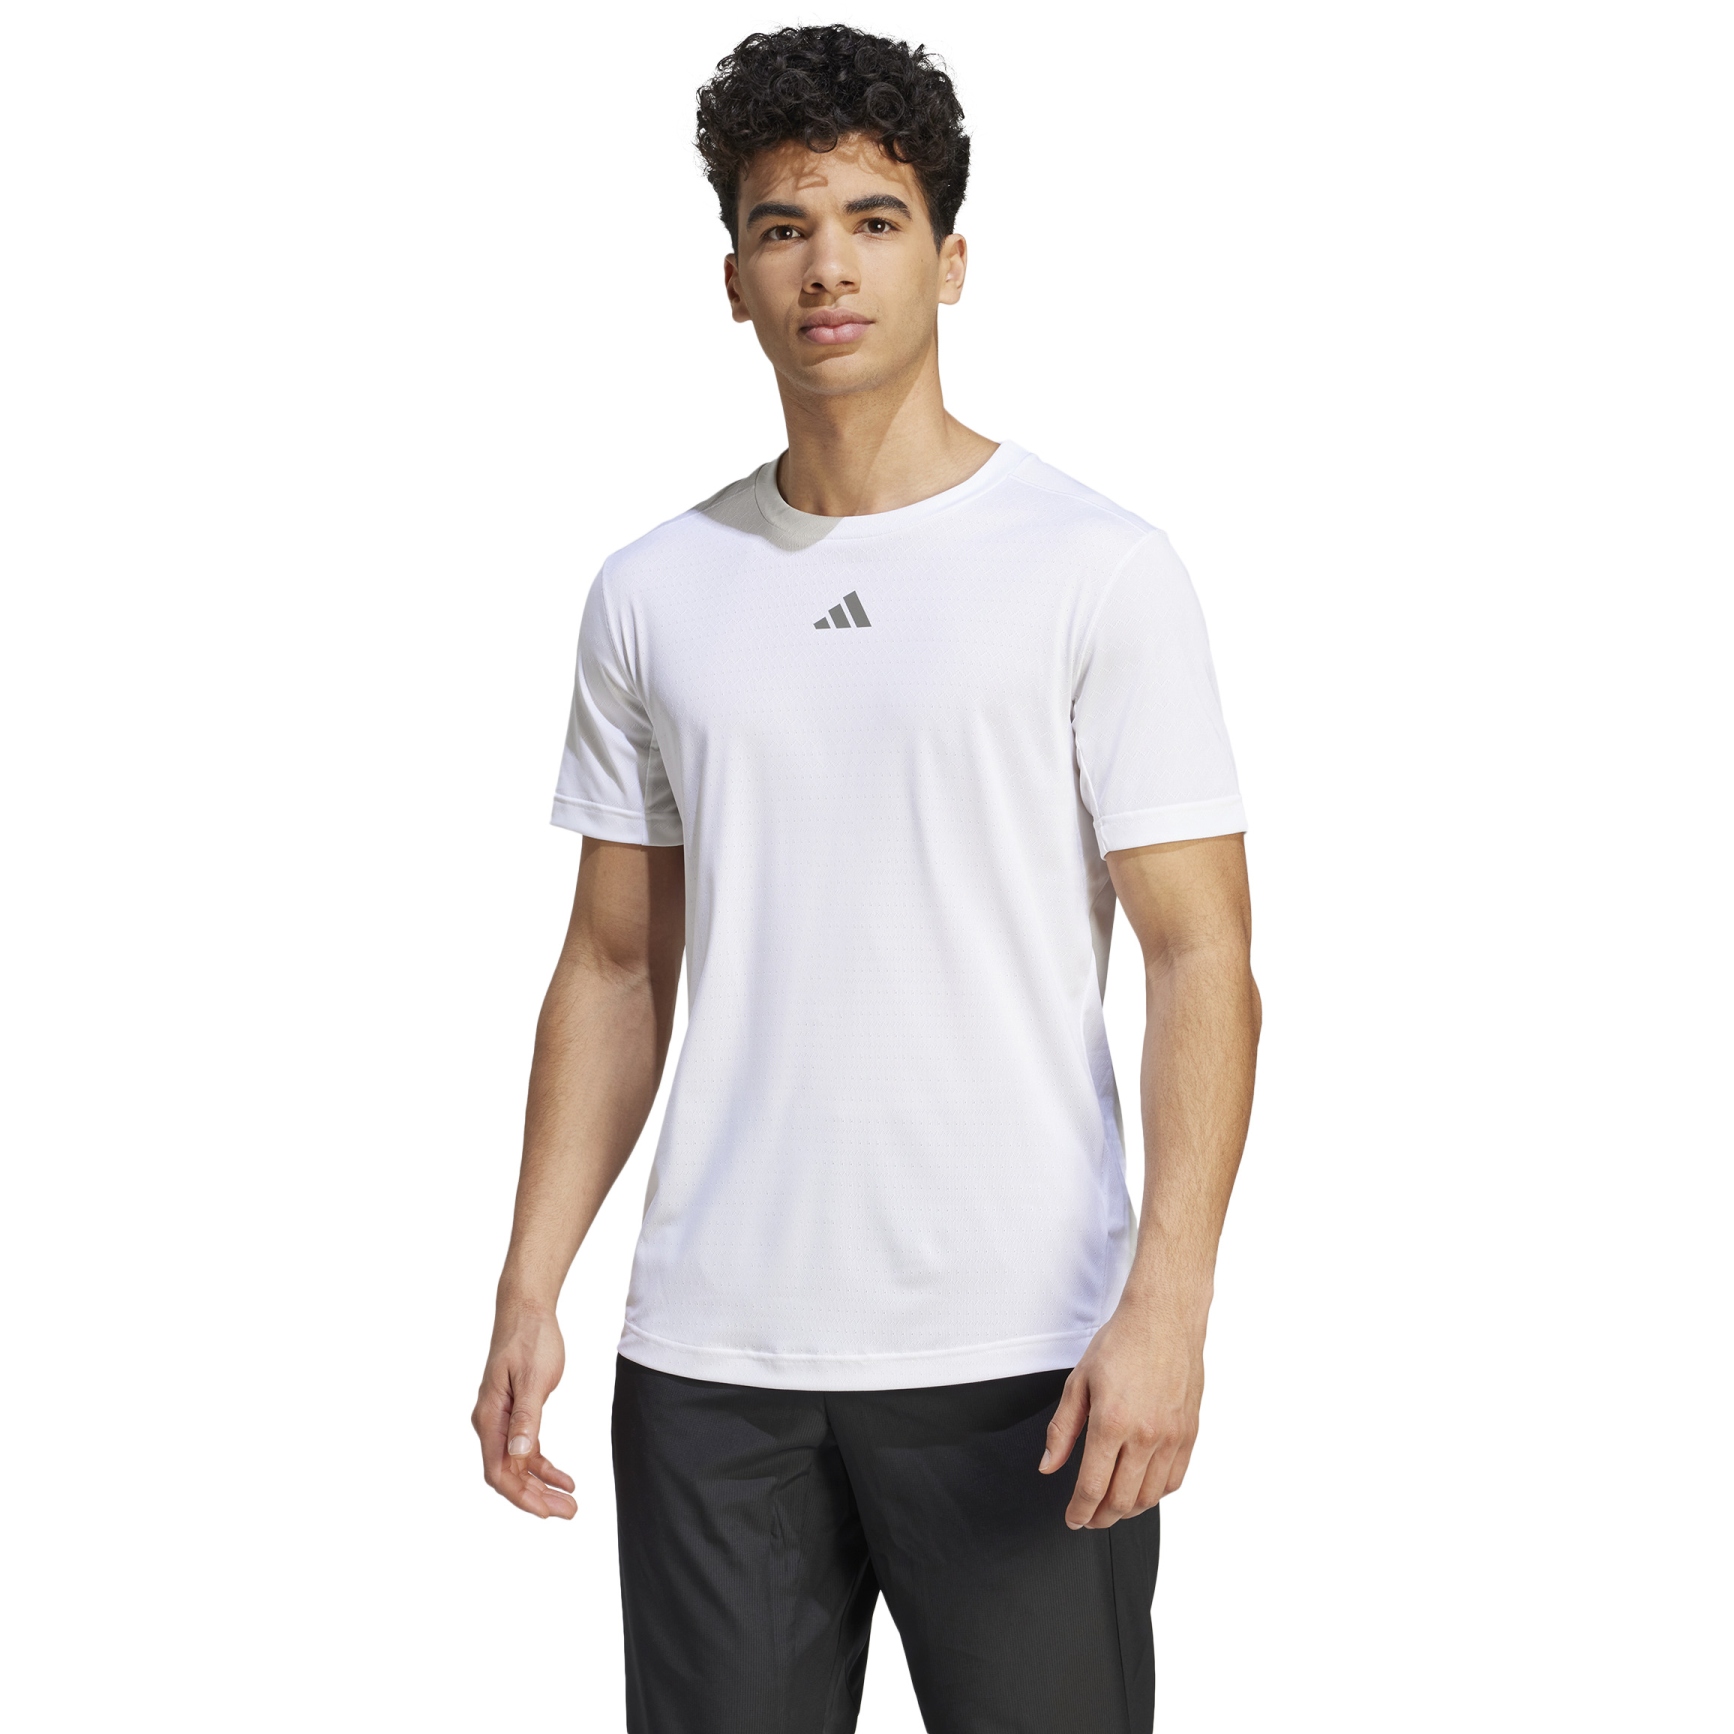 Produktbild von adidas Better HIIT T-Shirt Herren - weiß IB3470